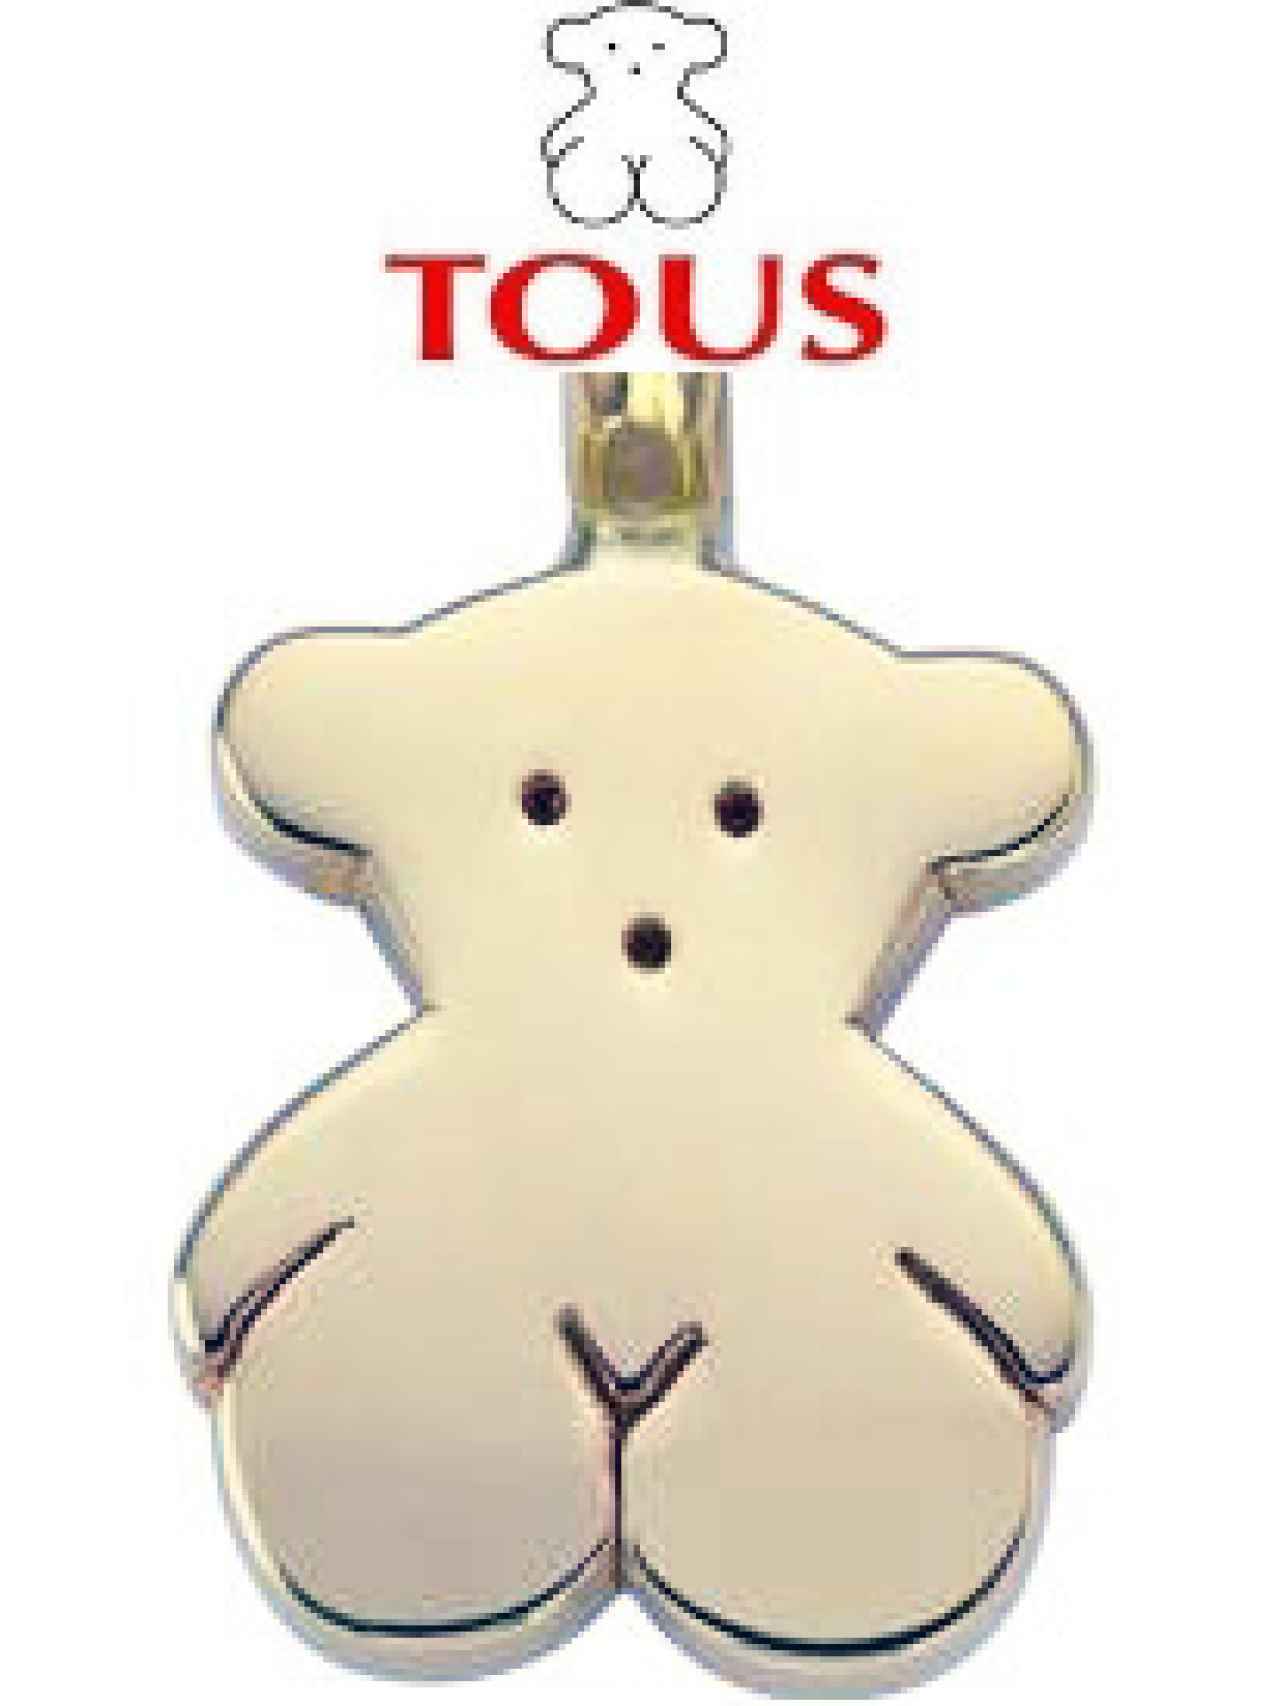 El oso de Tous, reclamo de la marca.